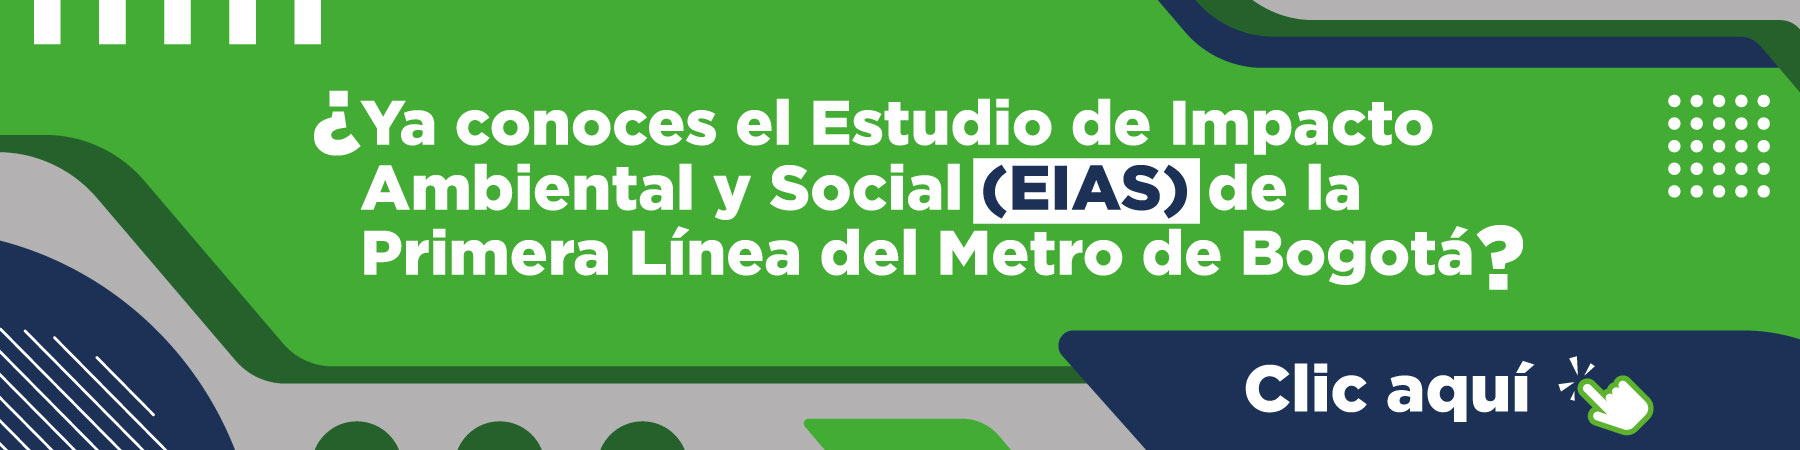 Estudio de Impacto Social y Ambiental de la Primera Línea del Metro de Bogotá